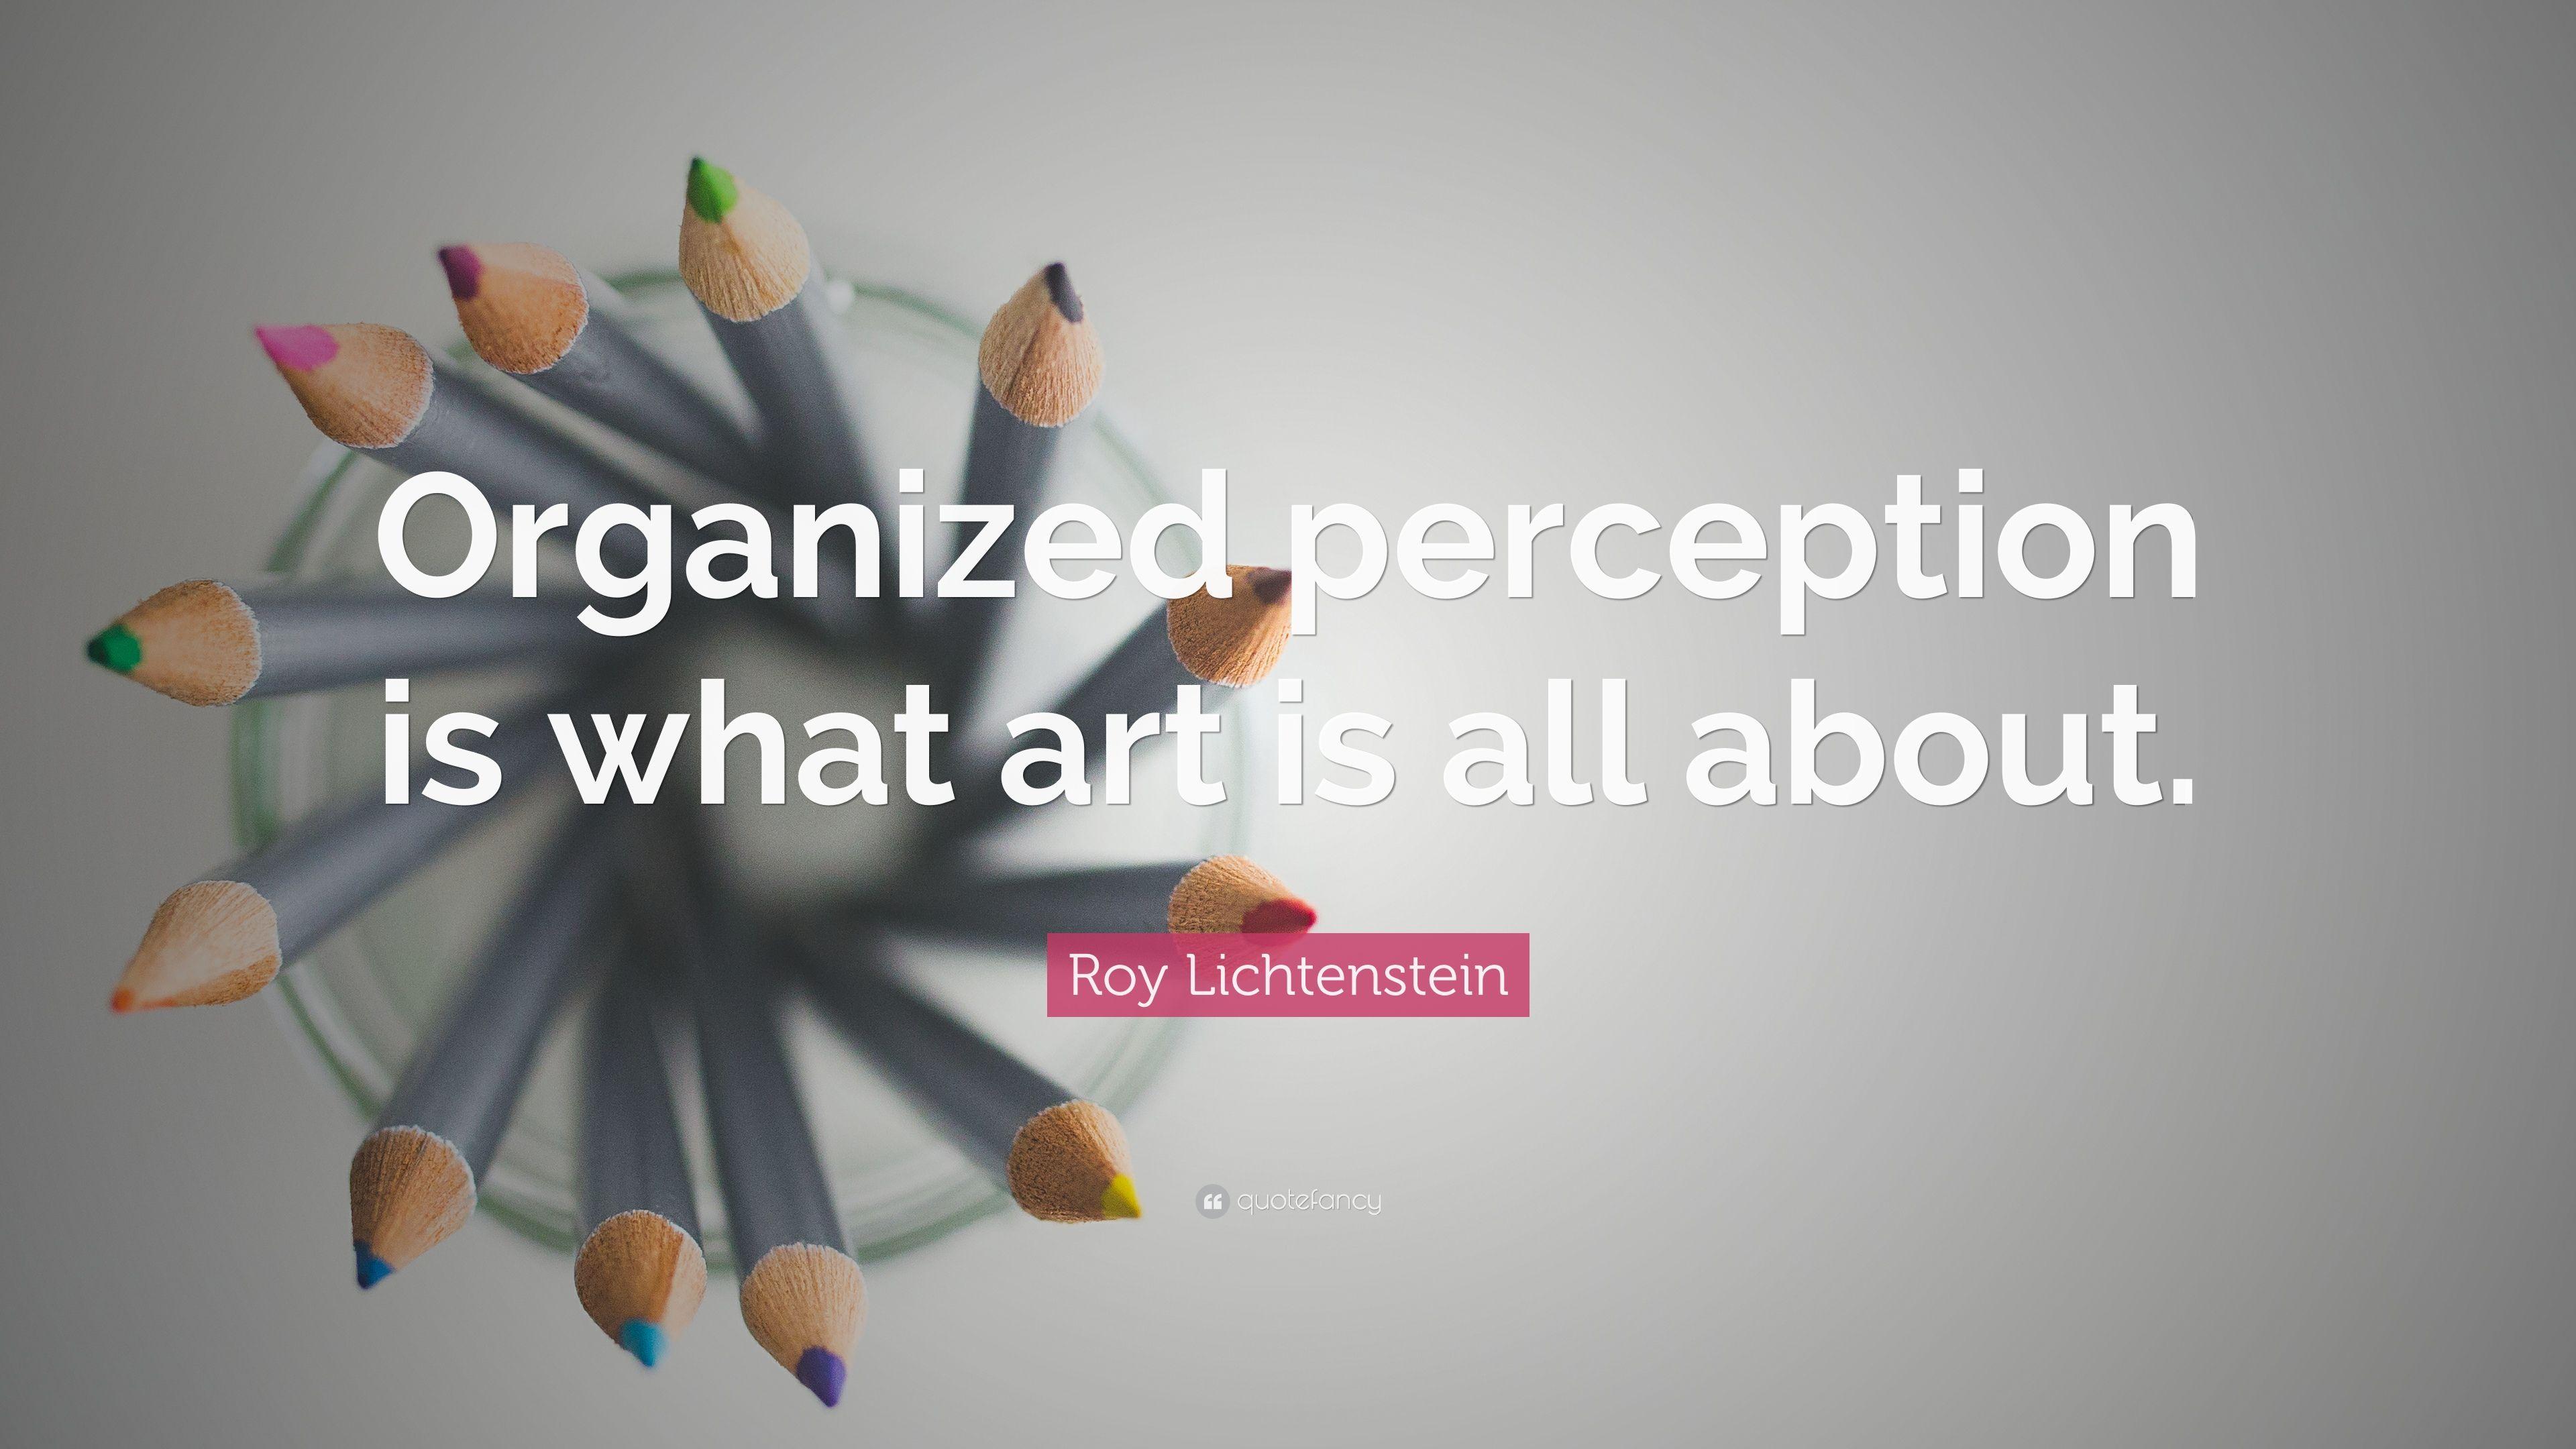 Roy Lichtenstein Quote: “Organized perception is what art is all